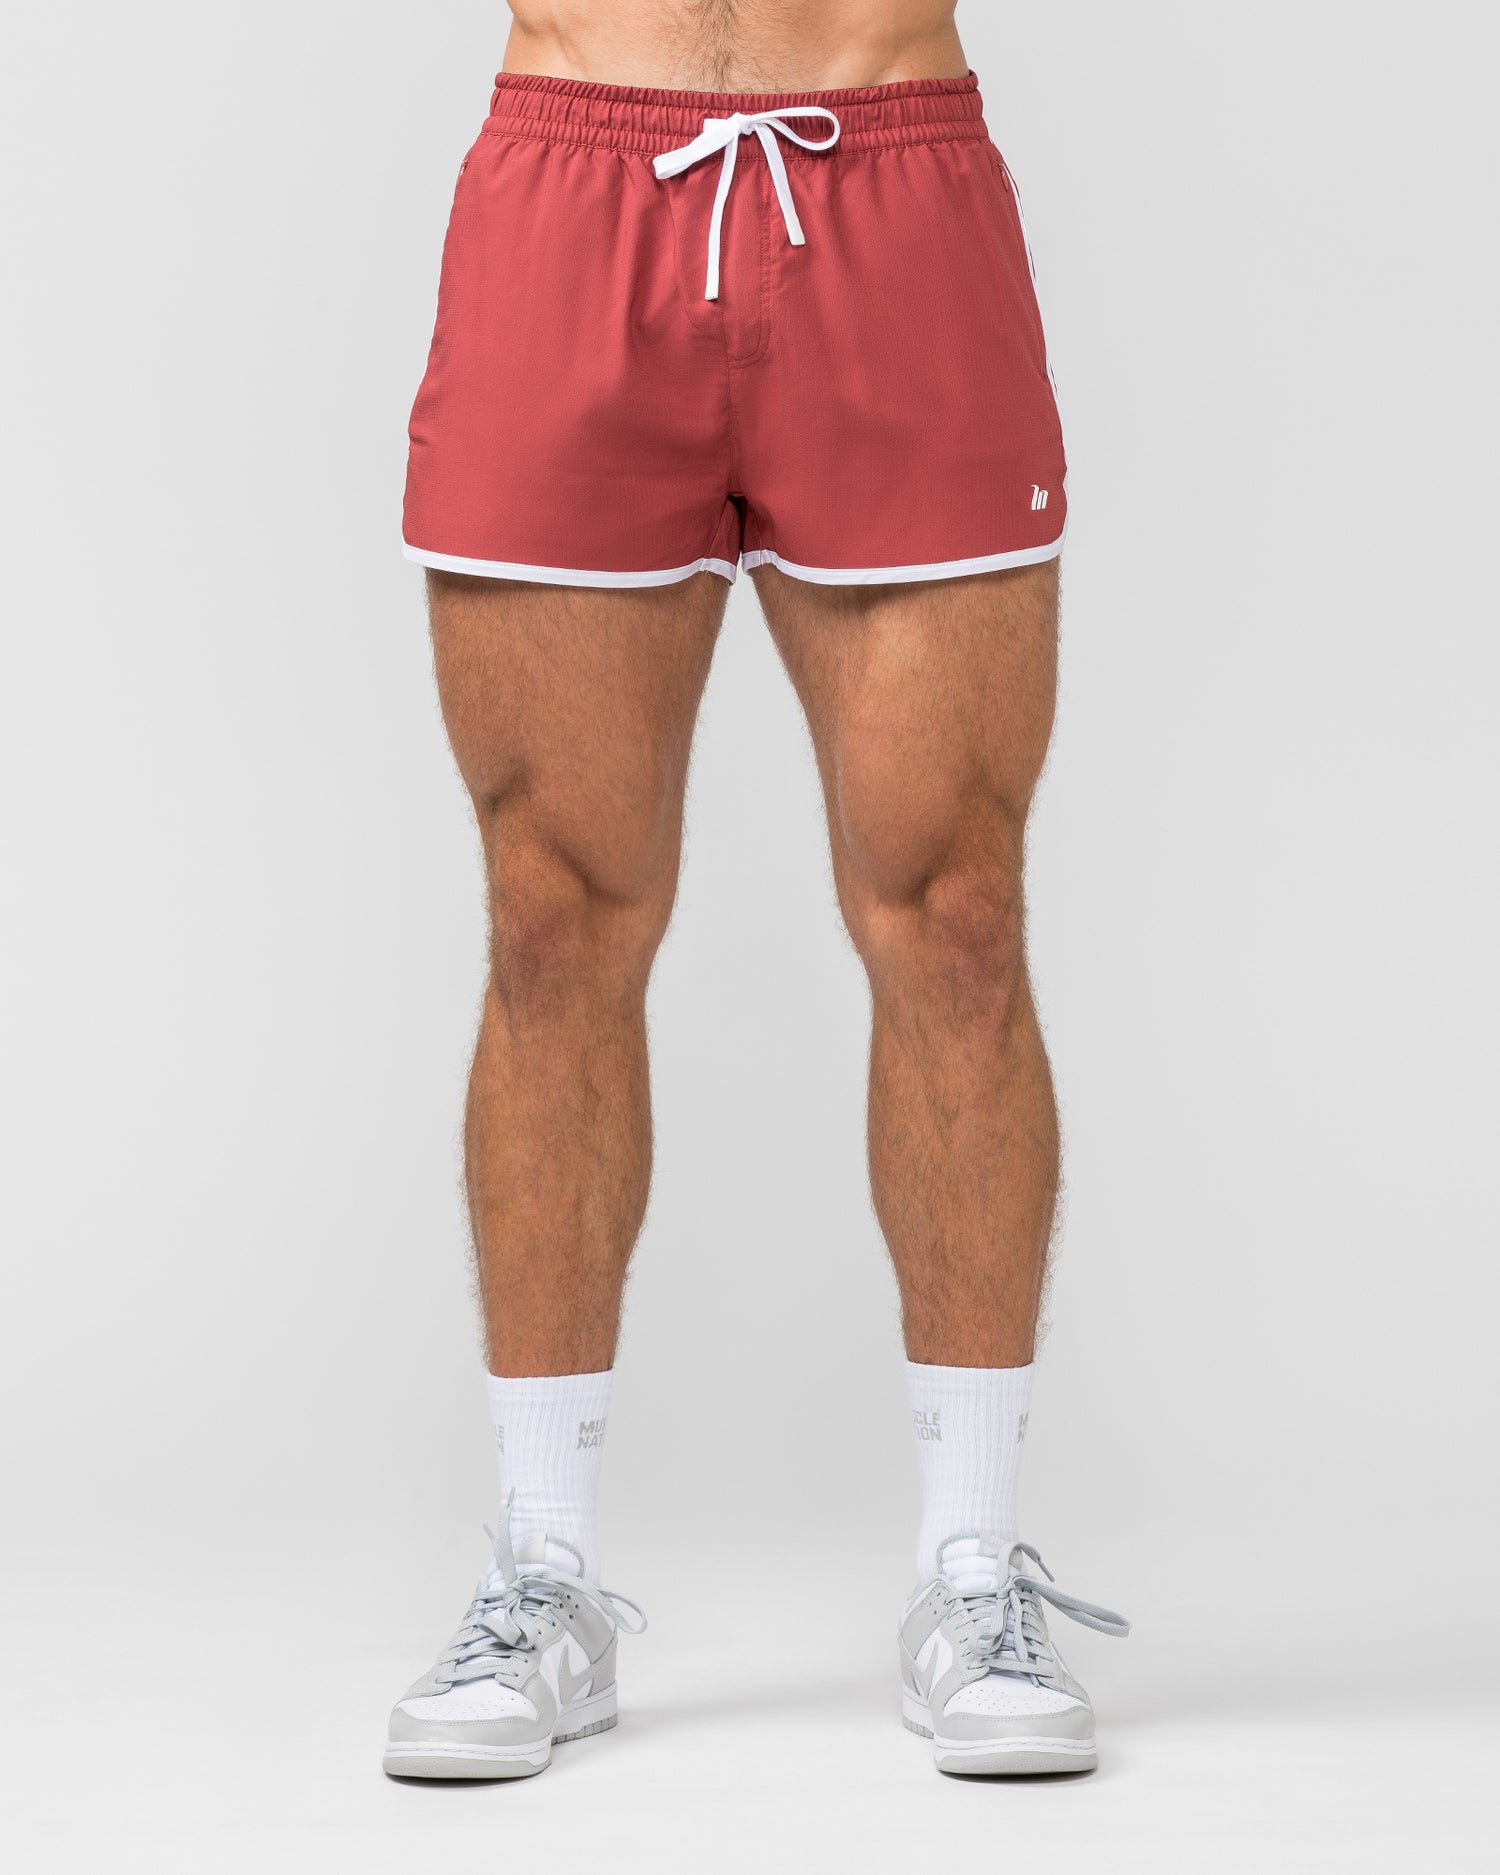 Retro Shorts - Dusty Red